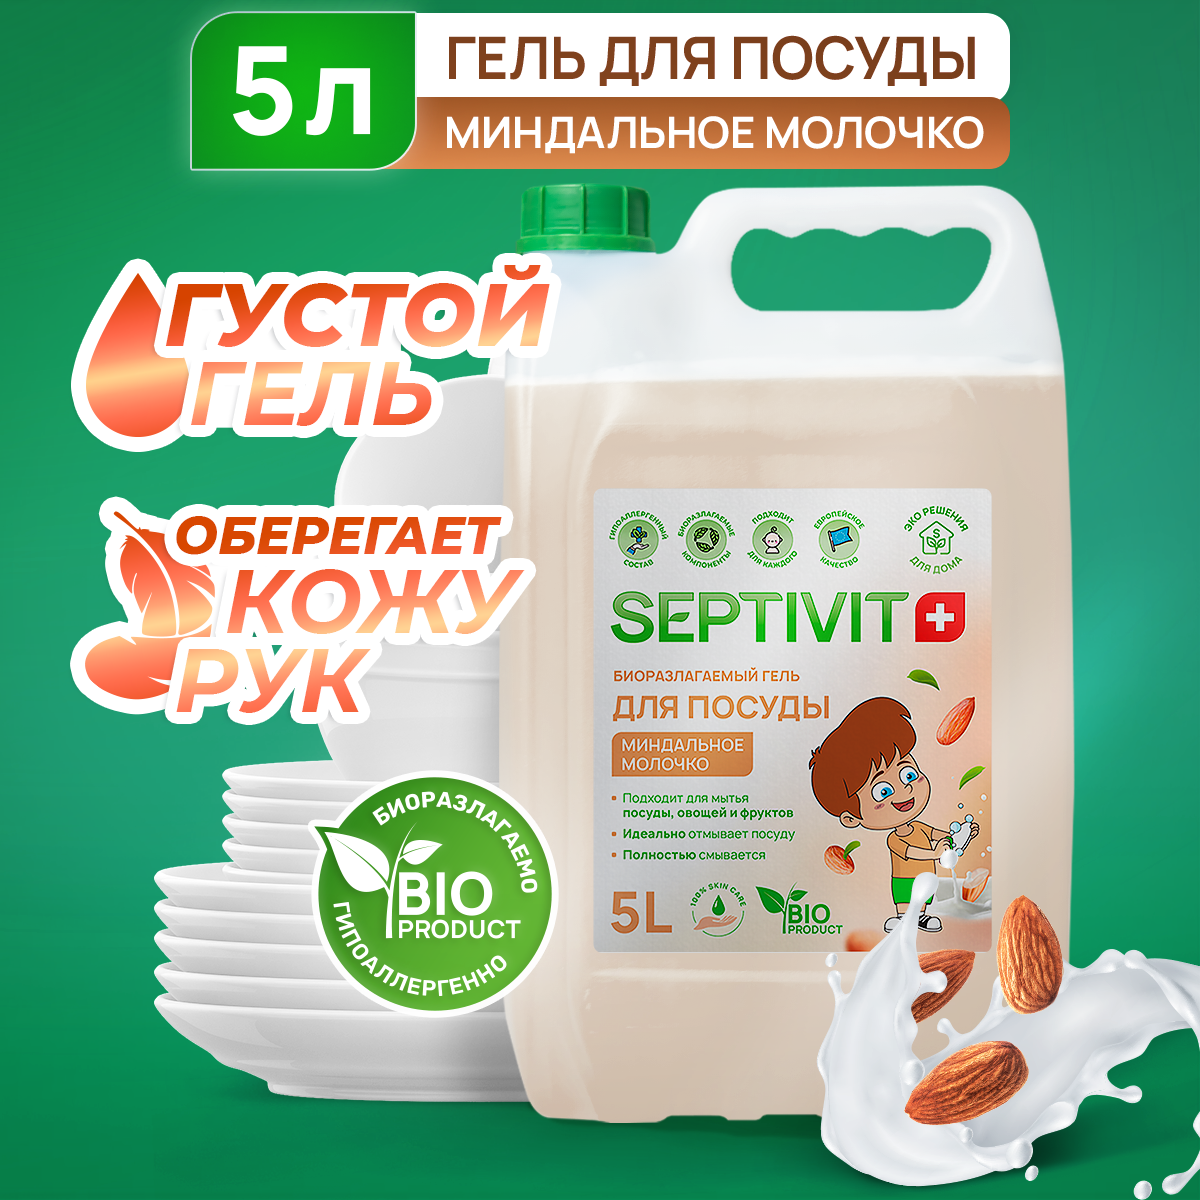 Средство для мытья посуды, овощей и фруктов SEPTIVIT Premium / Гель для мытья посуды Септивит, Миндальное молочко 5л